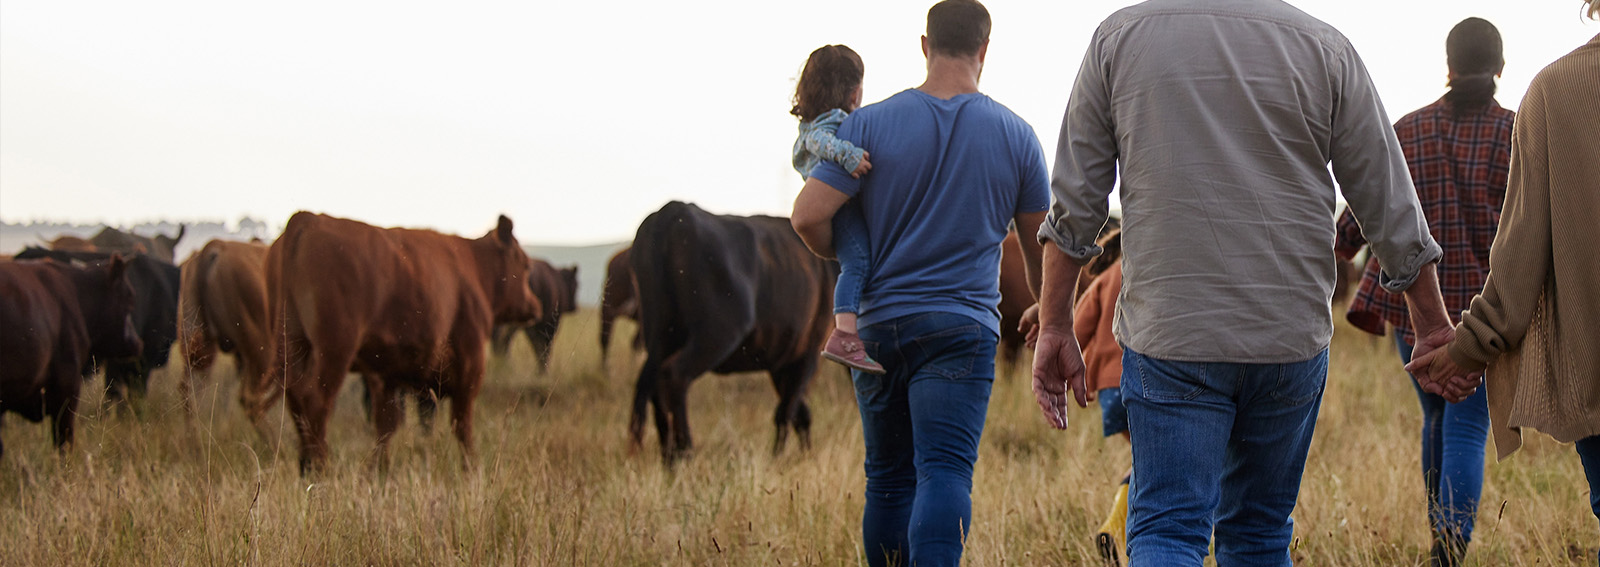 Multigenerational farm family walking in a field with cattle